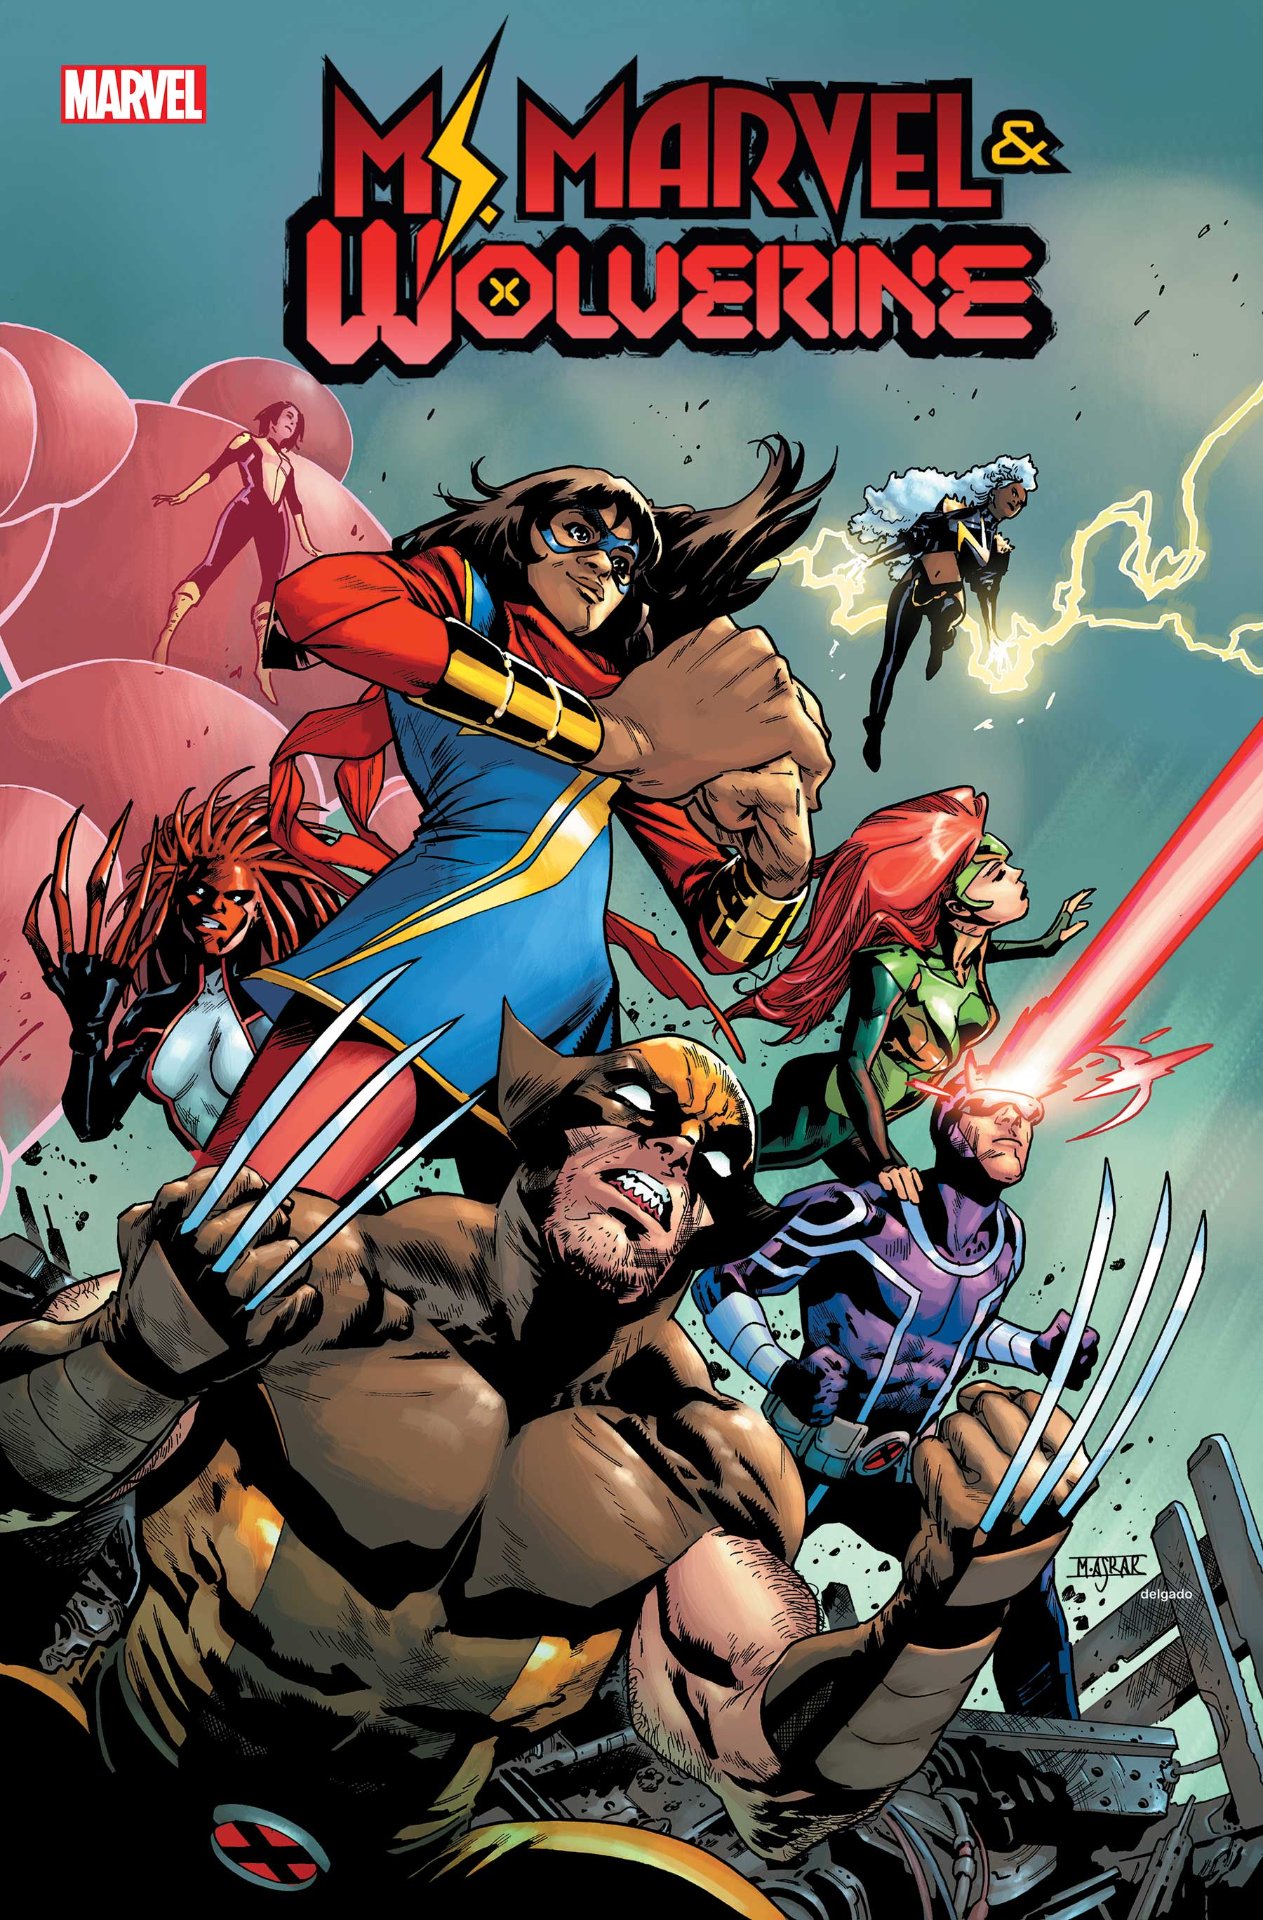 Arte de portada de Ms. Marvel & Wolverine #1 por Mahmud Asrar